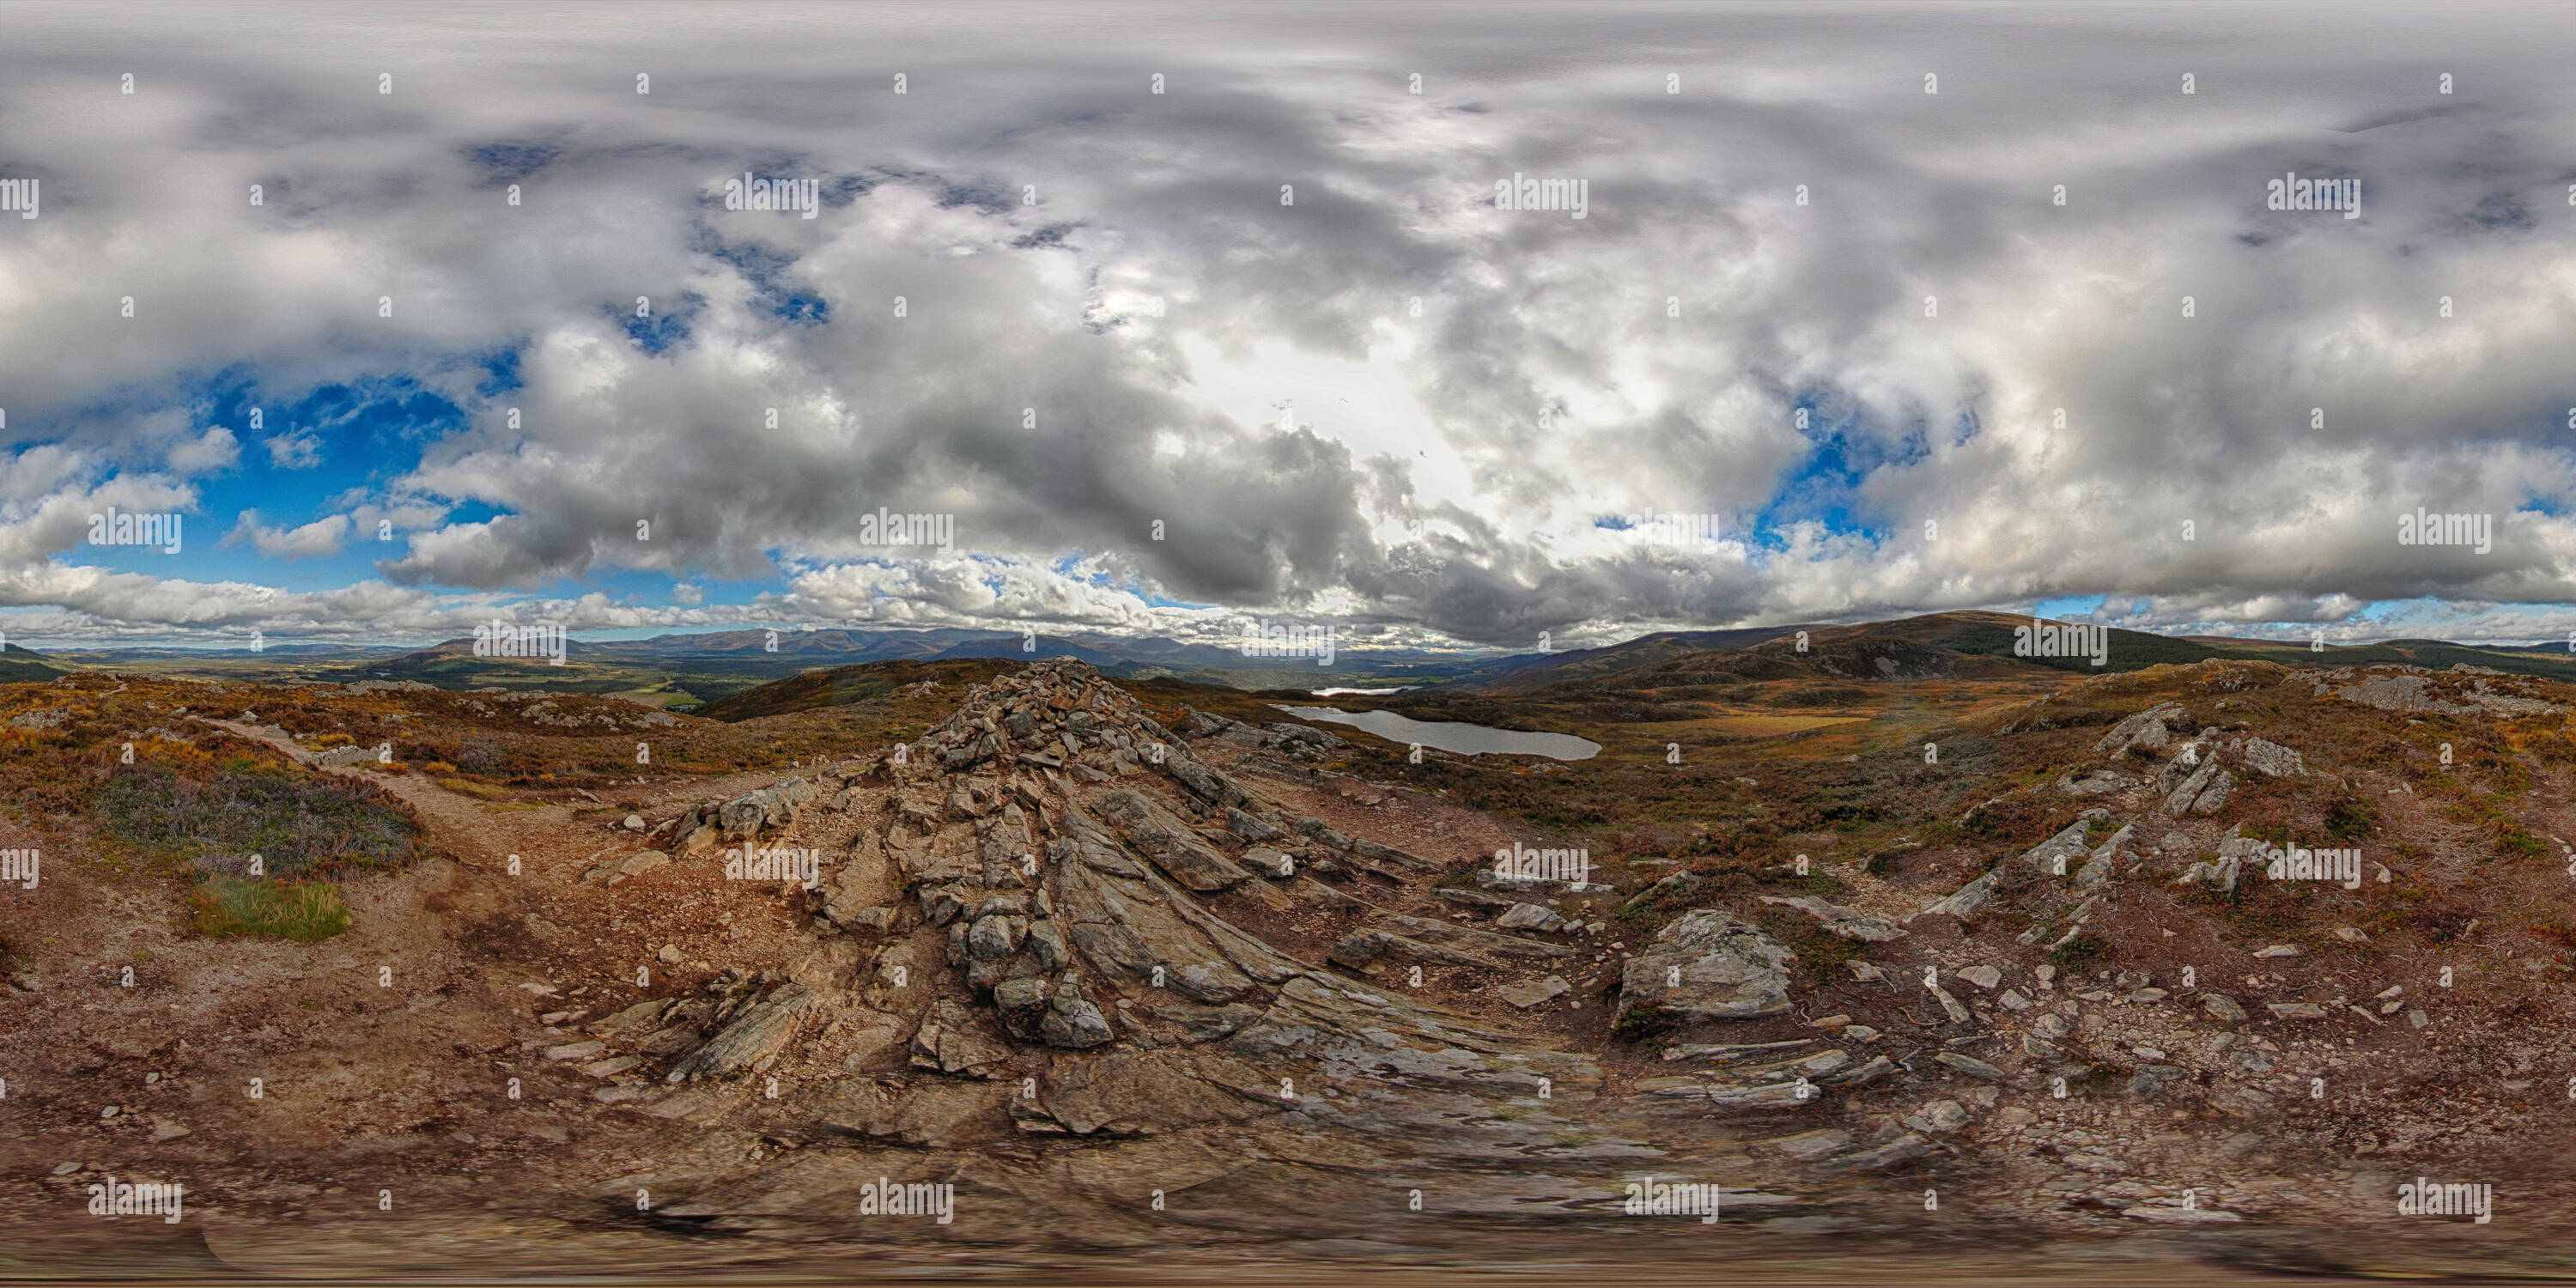 360 degree panoramic view of Scotland - Craigellachie - 03